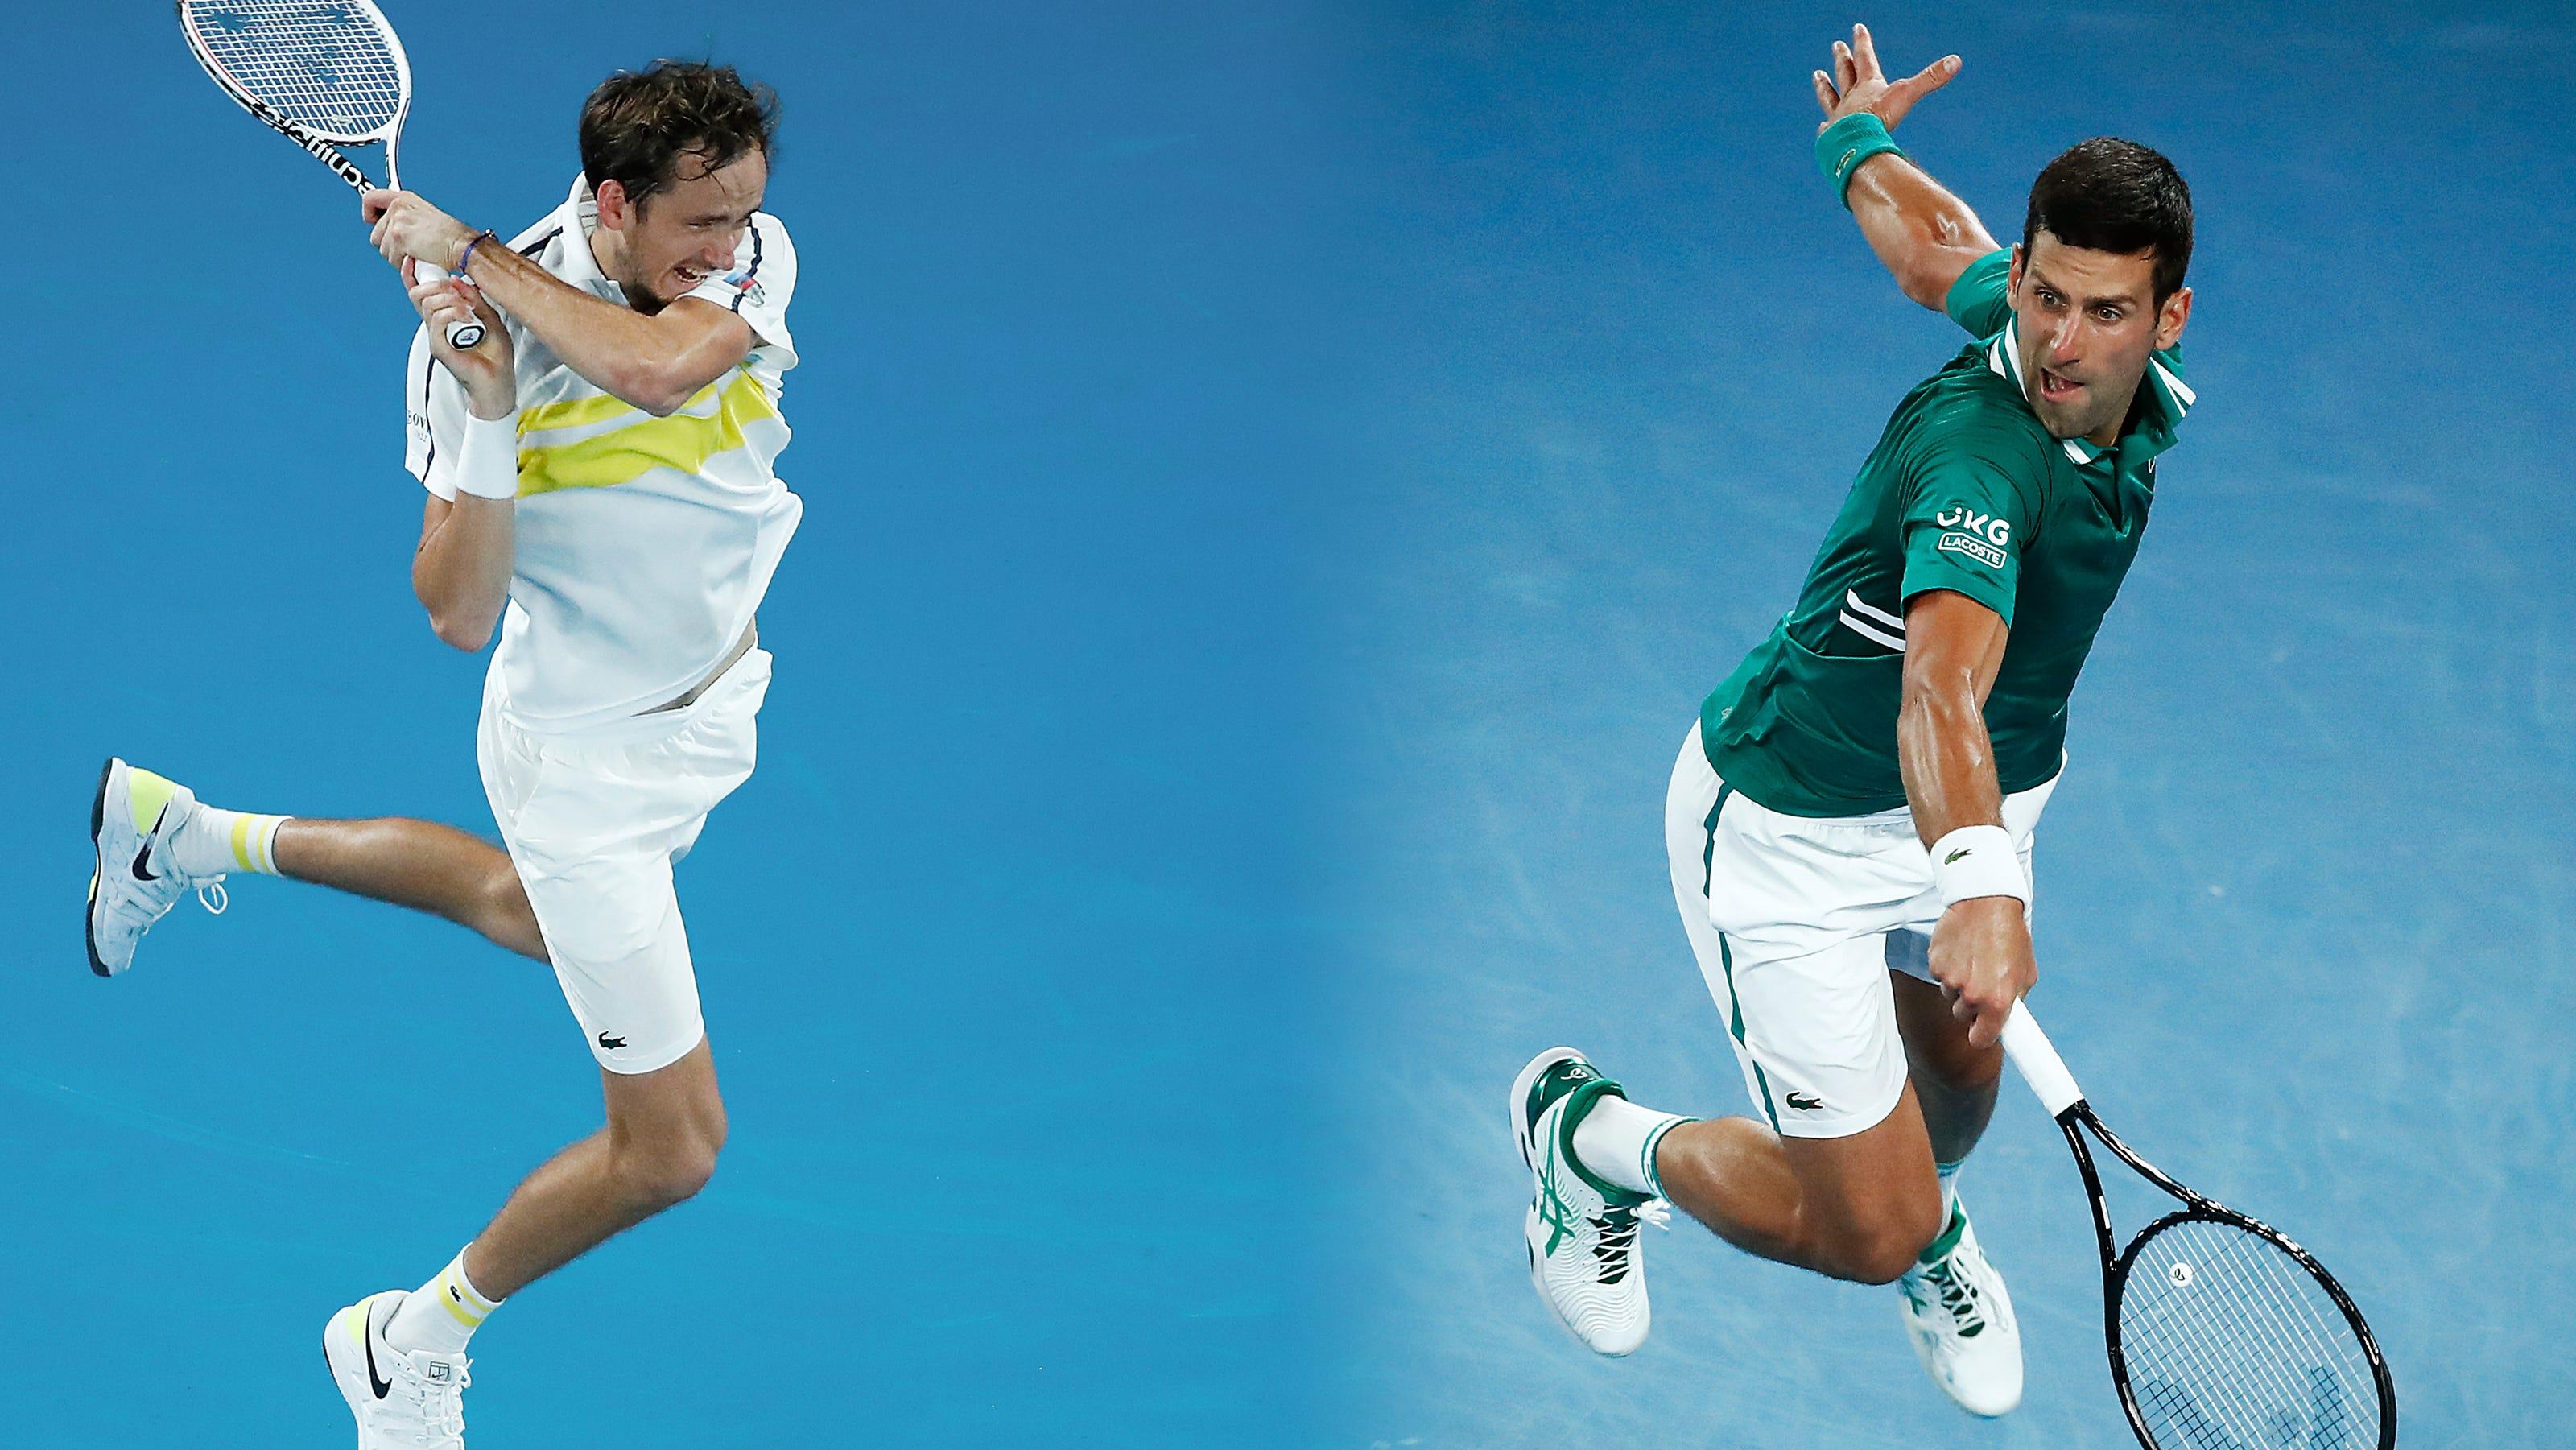 Skaldet Væk Charlotte Bronte Australian Open final: What time is Novak Djokovic vs. Daniil Medvedev